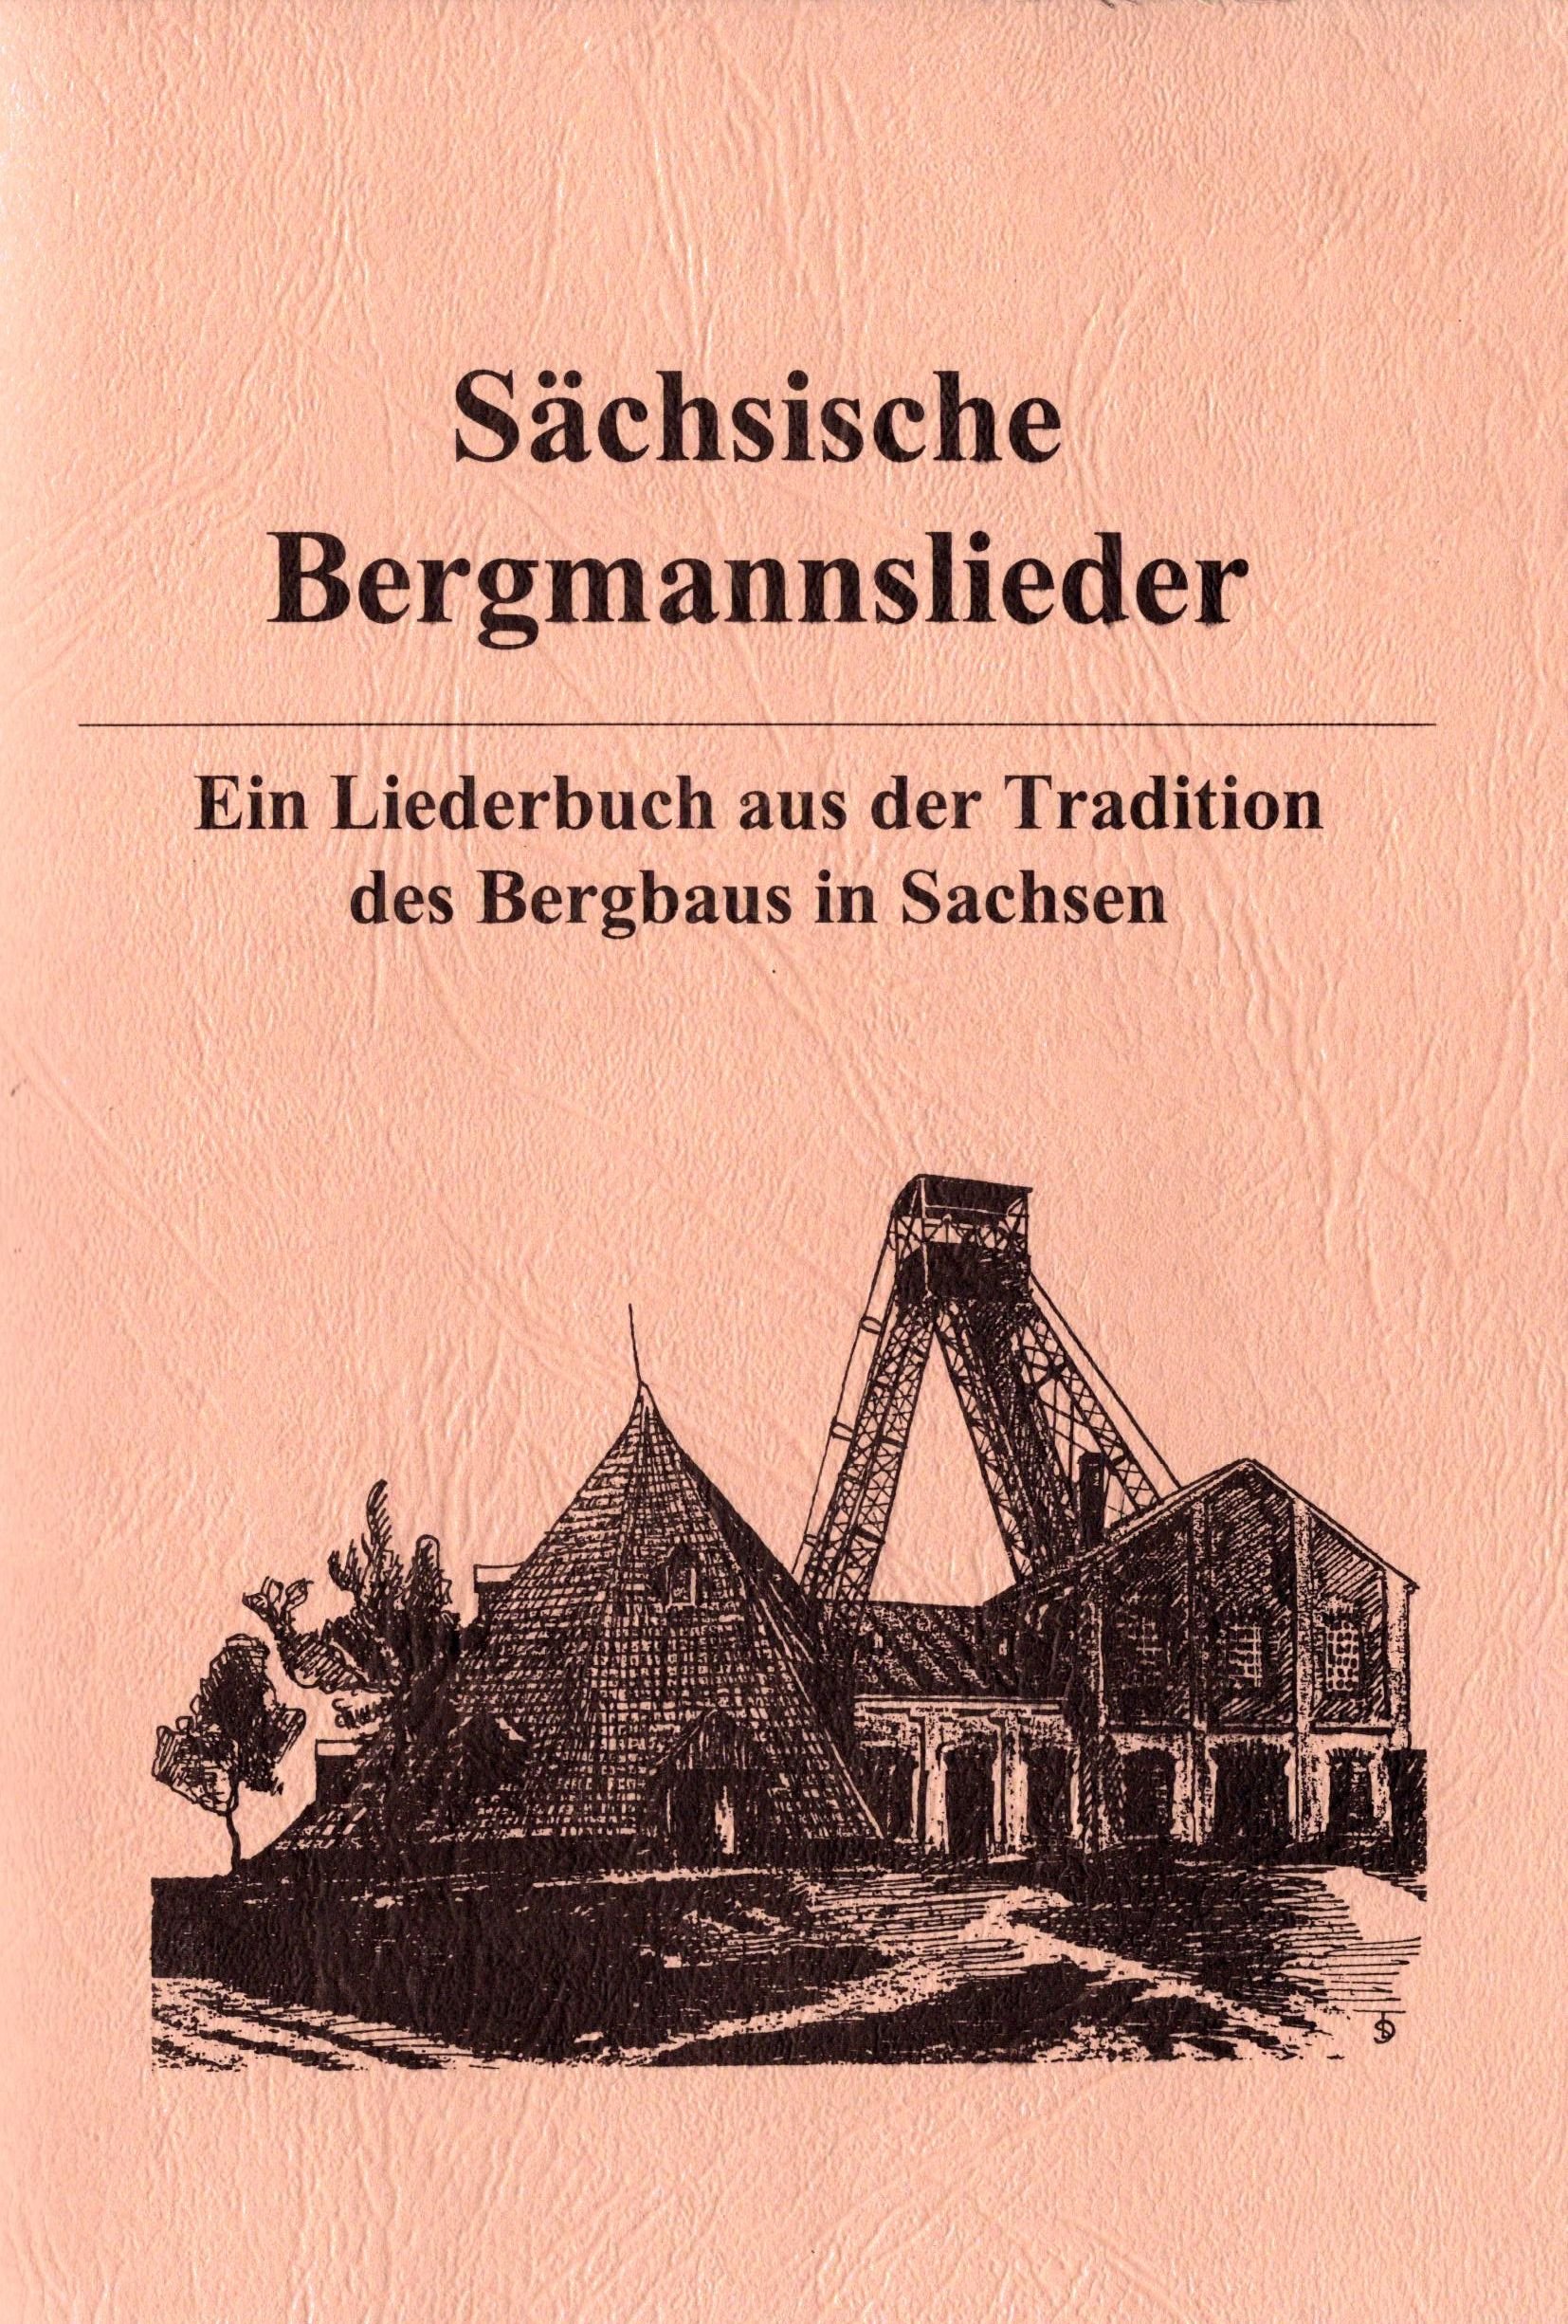 Sächsische Bergmannslieder (Archiv SAXONIA-FREIBERG-STIFTUNG CC BY-NC-SA)